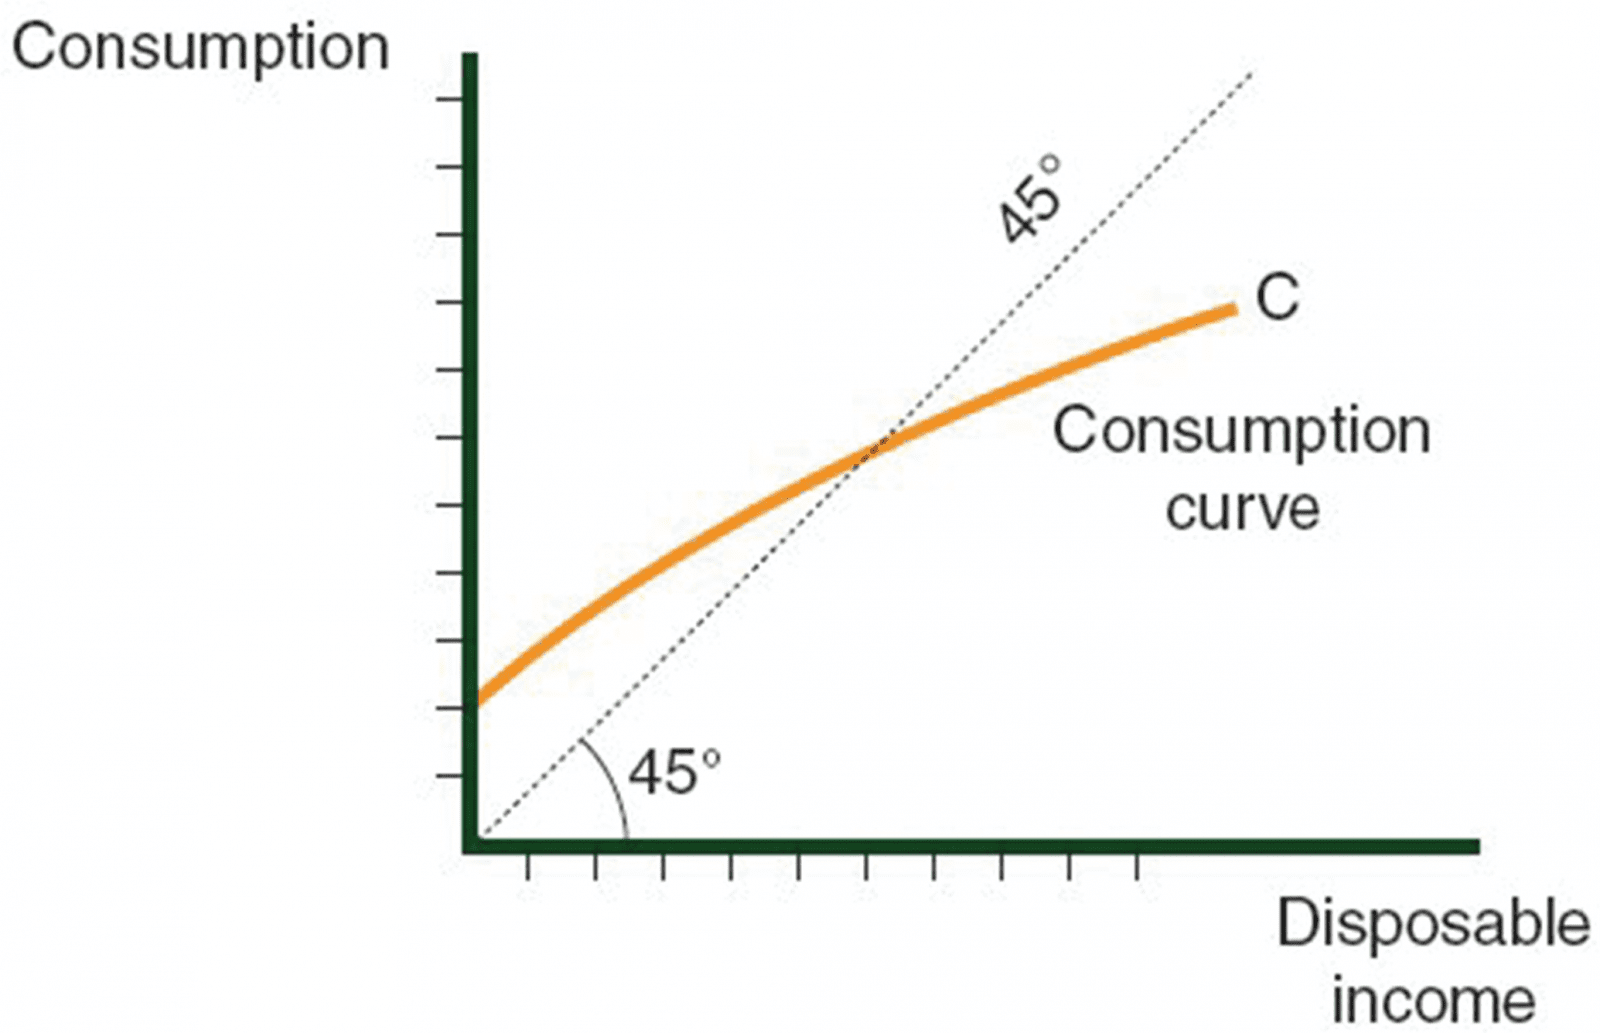 The Consumption Curve